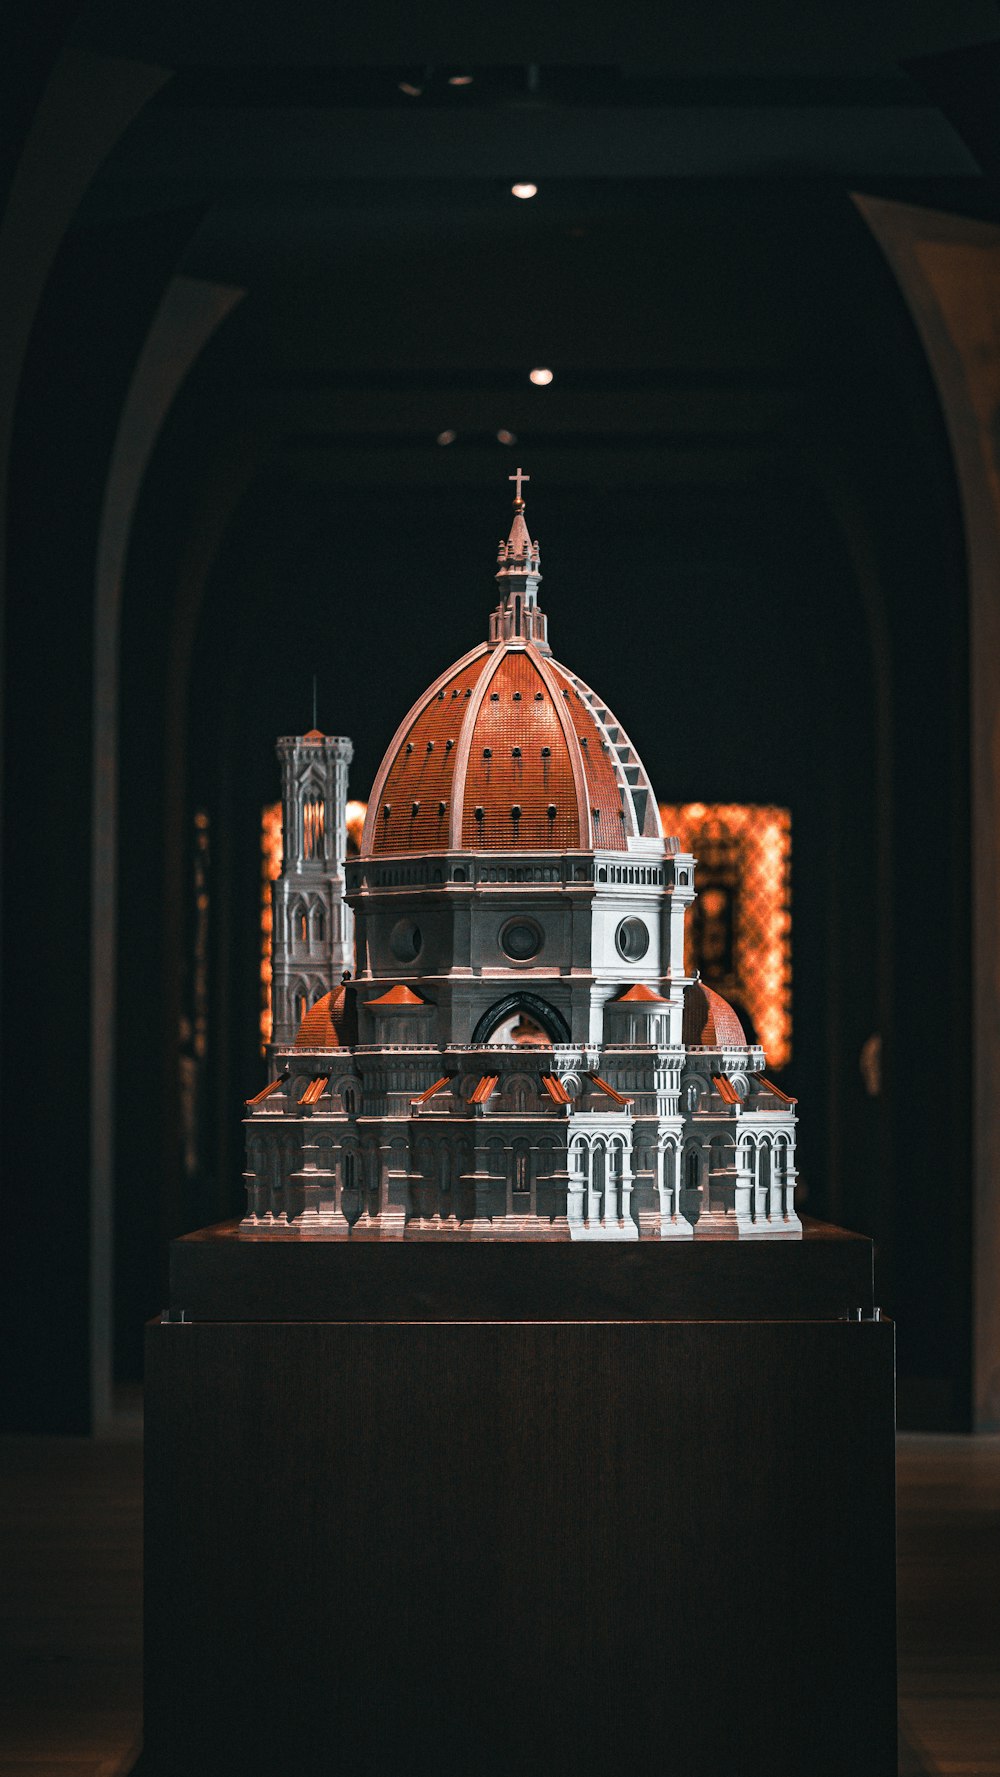 Ein Modell der Kuppel eines Gebäudes